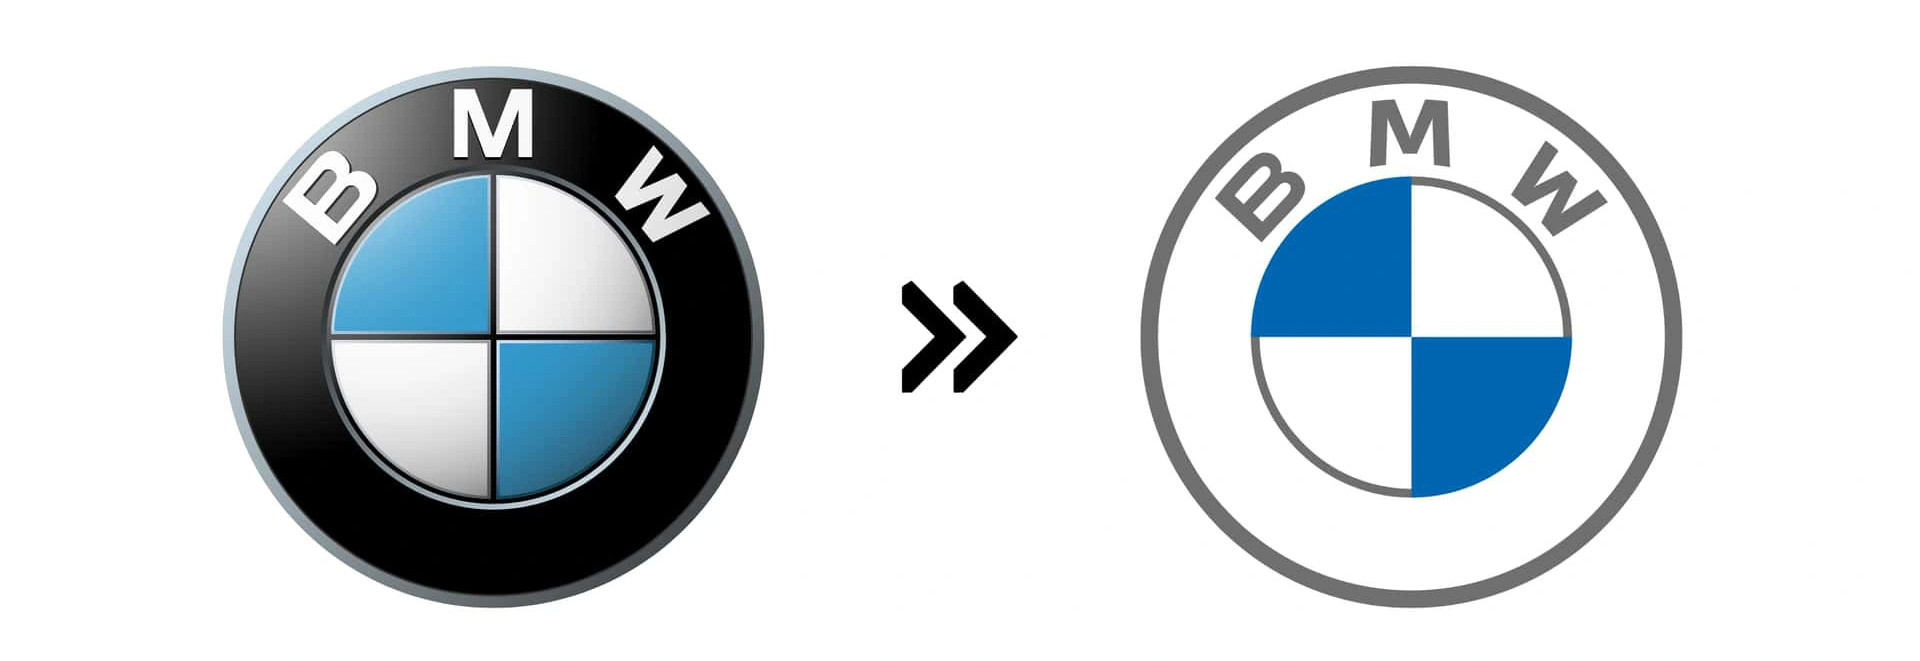 BMW (2021): Tương tự đối thủ đồng hương, BMW cũng đơn giản hóa logo của mình nhưng sớm hơn một năm. Vòng tròn bên ngoài đổi màu từ đen sang trắng, tông màu xanh được thay mới, đồng thời toàn bộ hiệu ứng 3D bị loại bỏ - Ảnh: Motor1